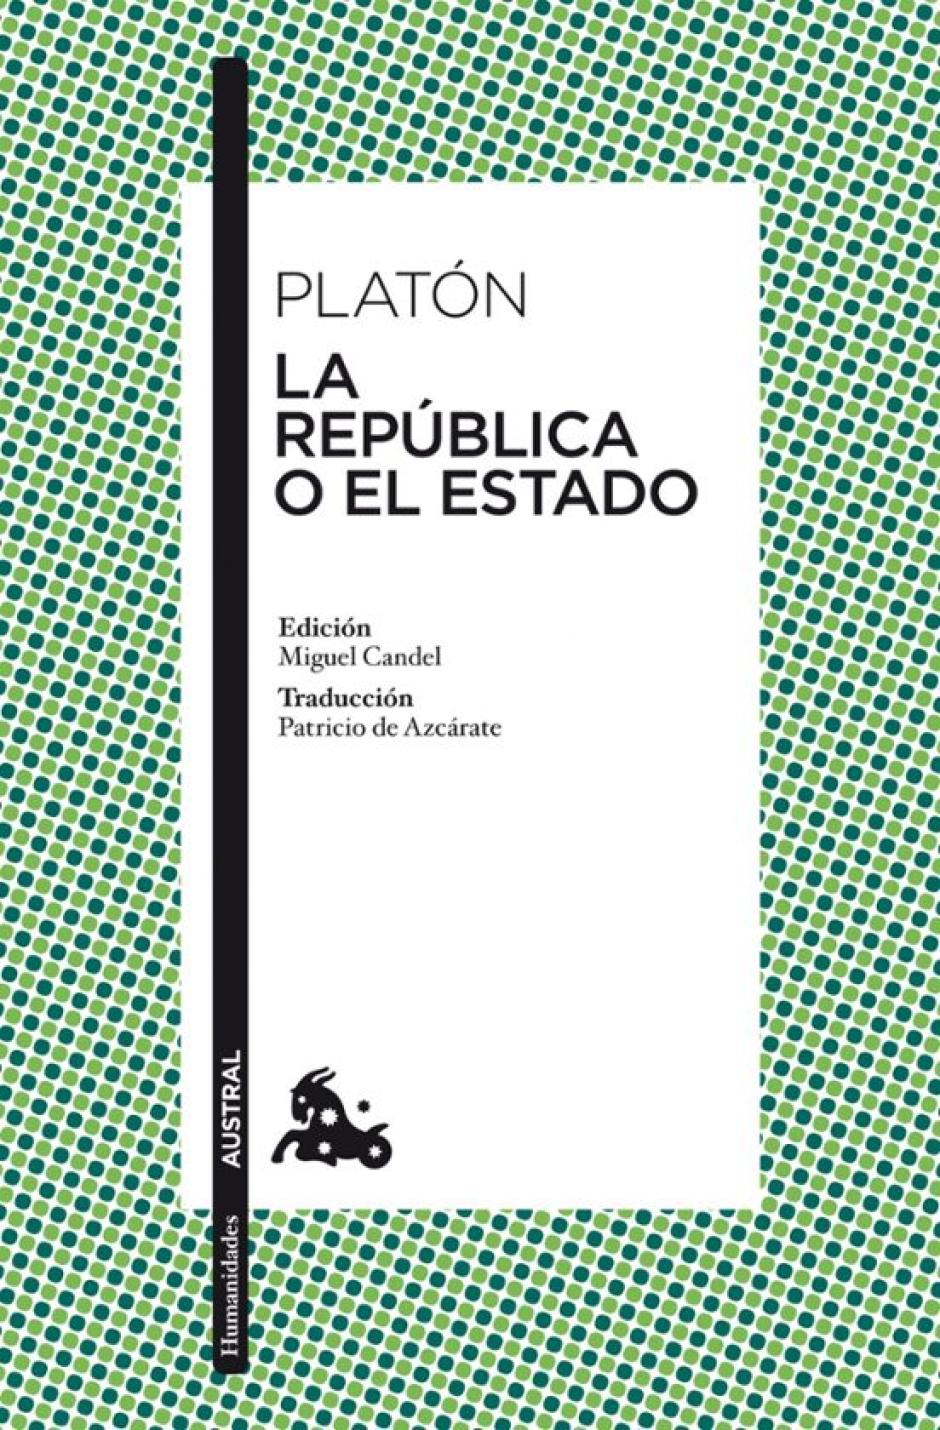 ´La República de Platón